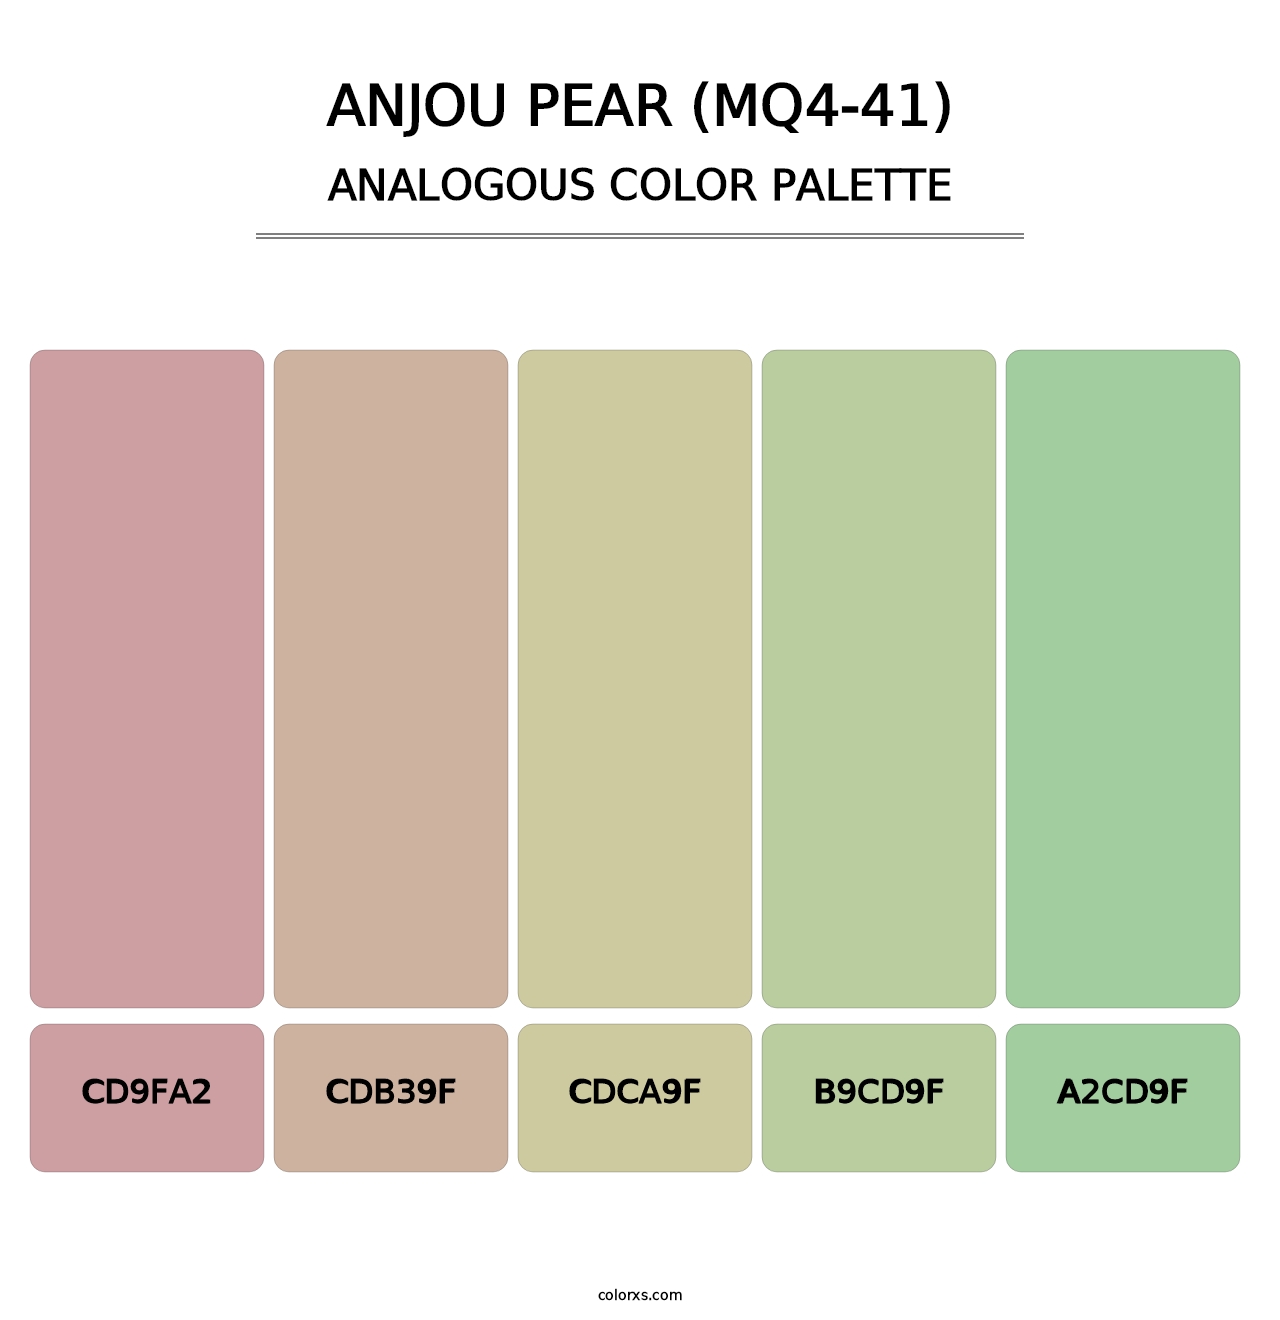 Anjou Pear (MQ4-41) - Analogous Color Palette